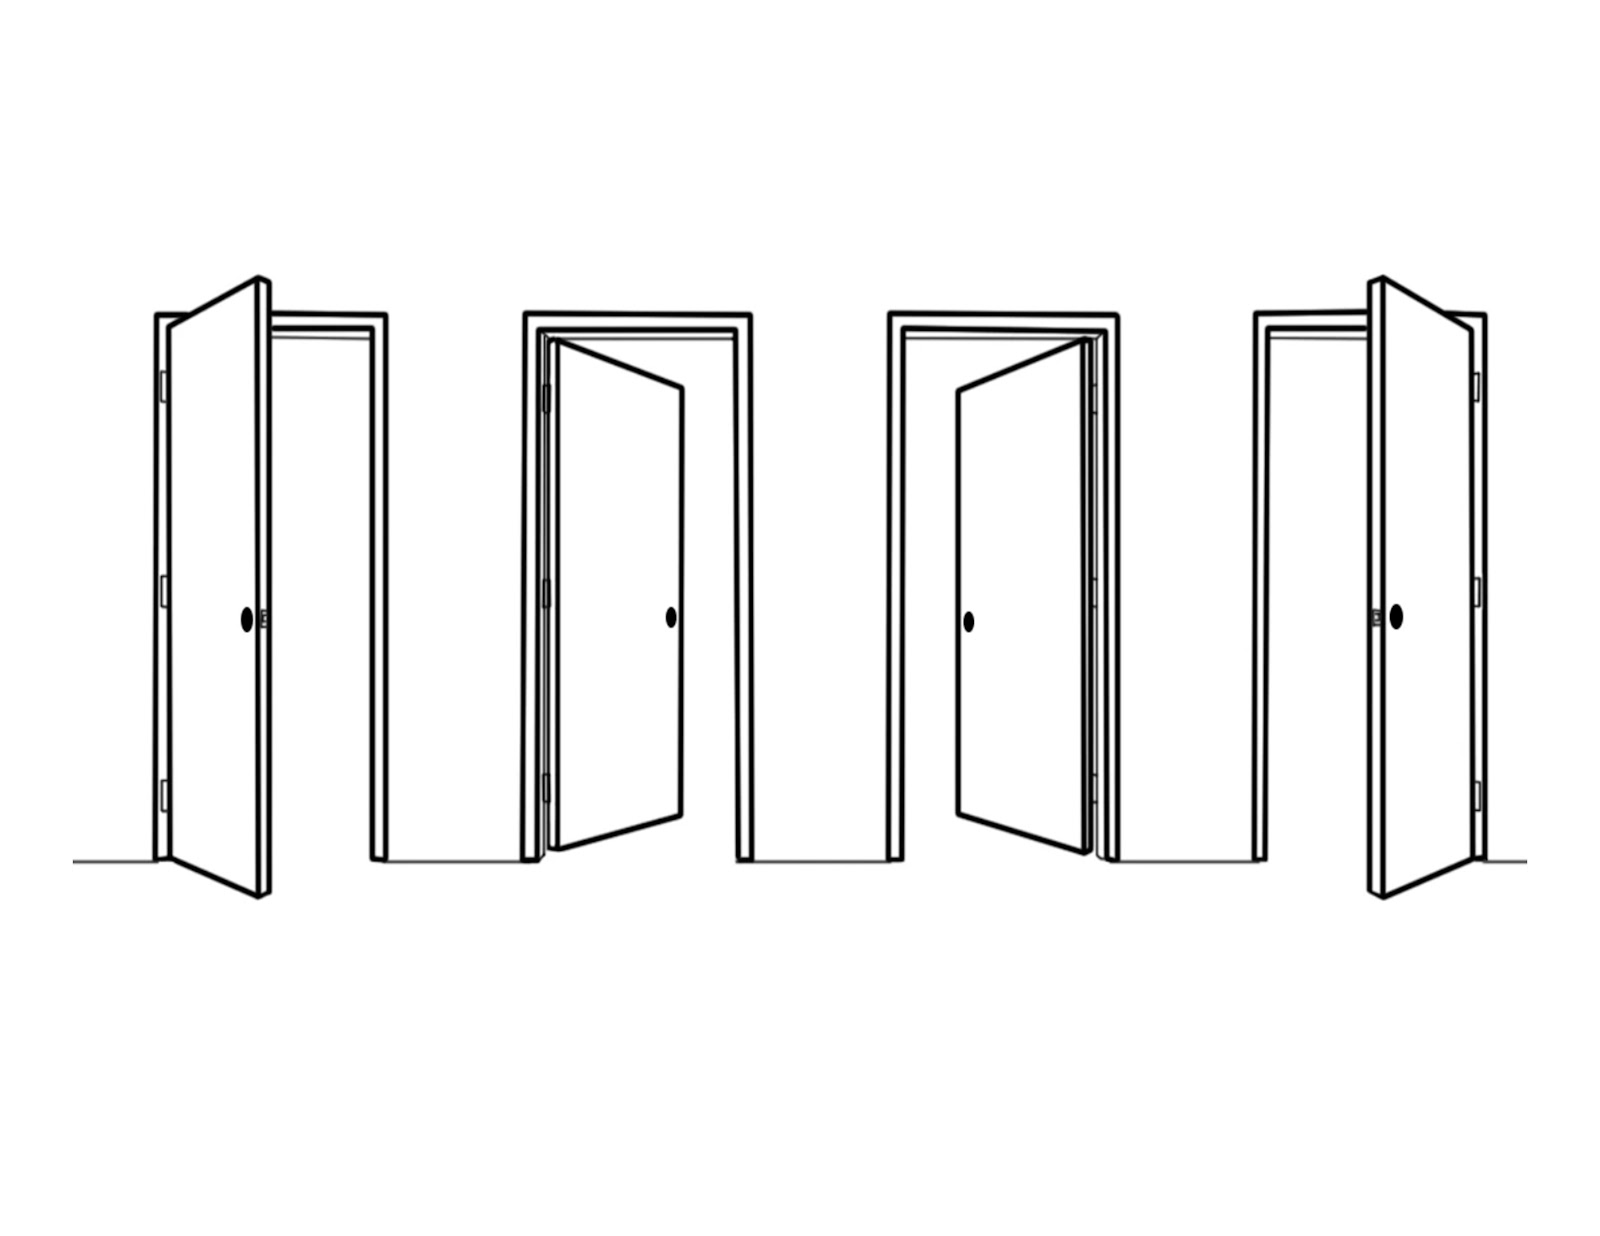 Apertura de la puerta opuesta (bisagras a la derecha)